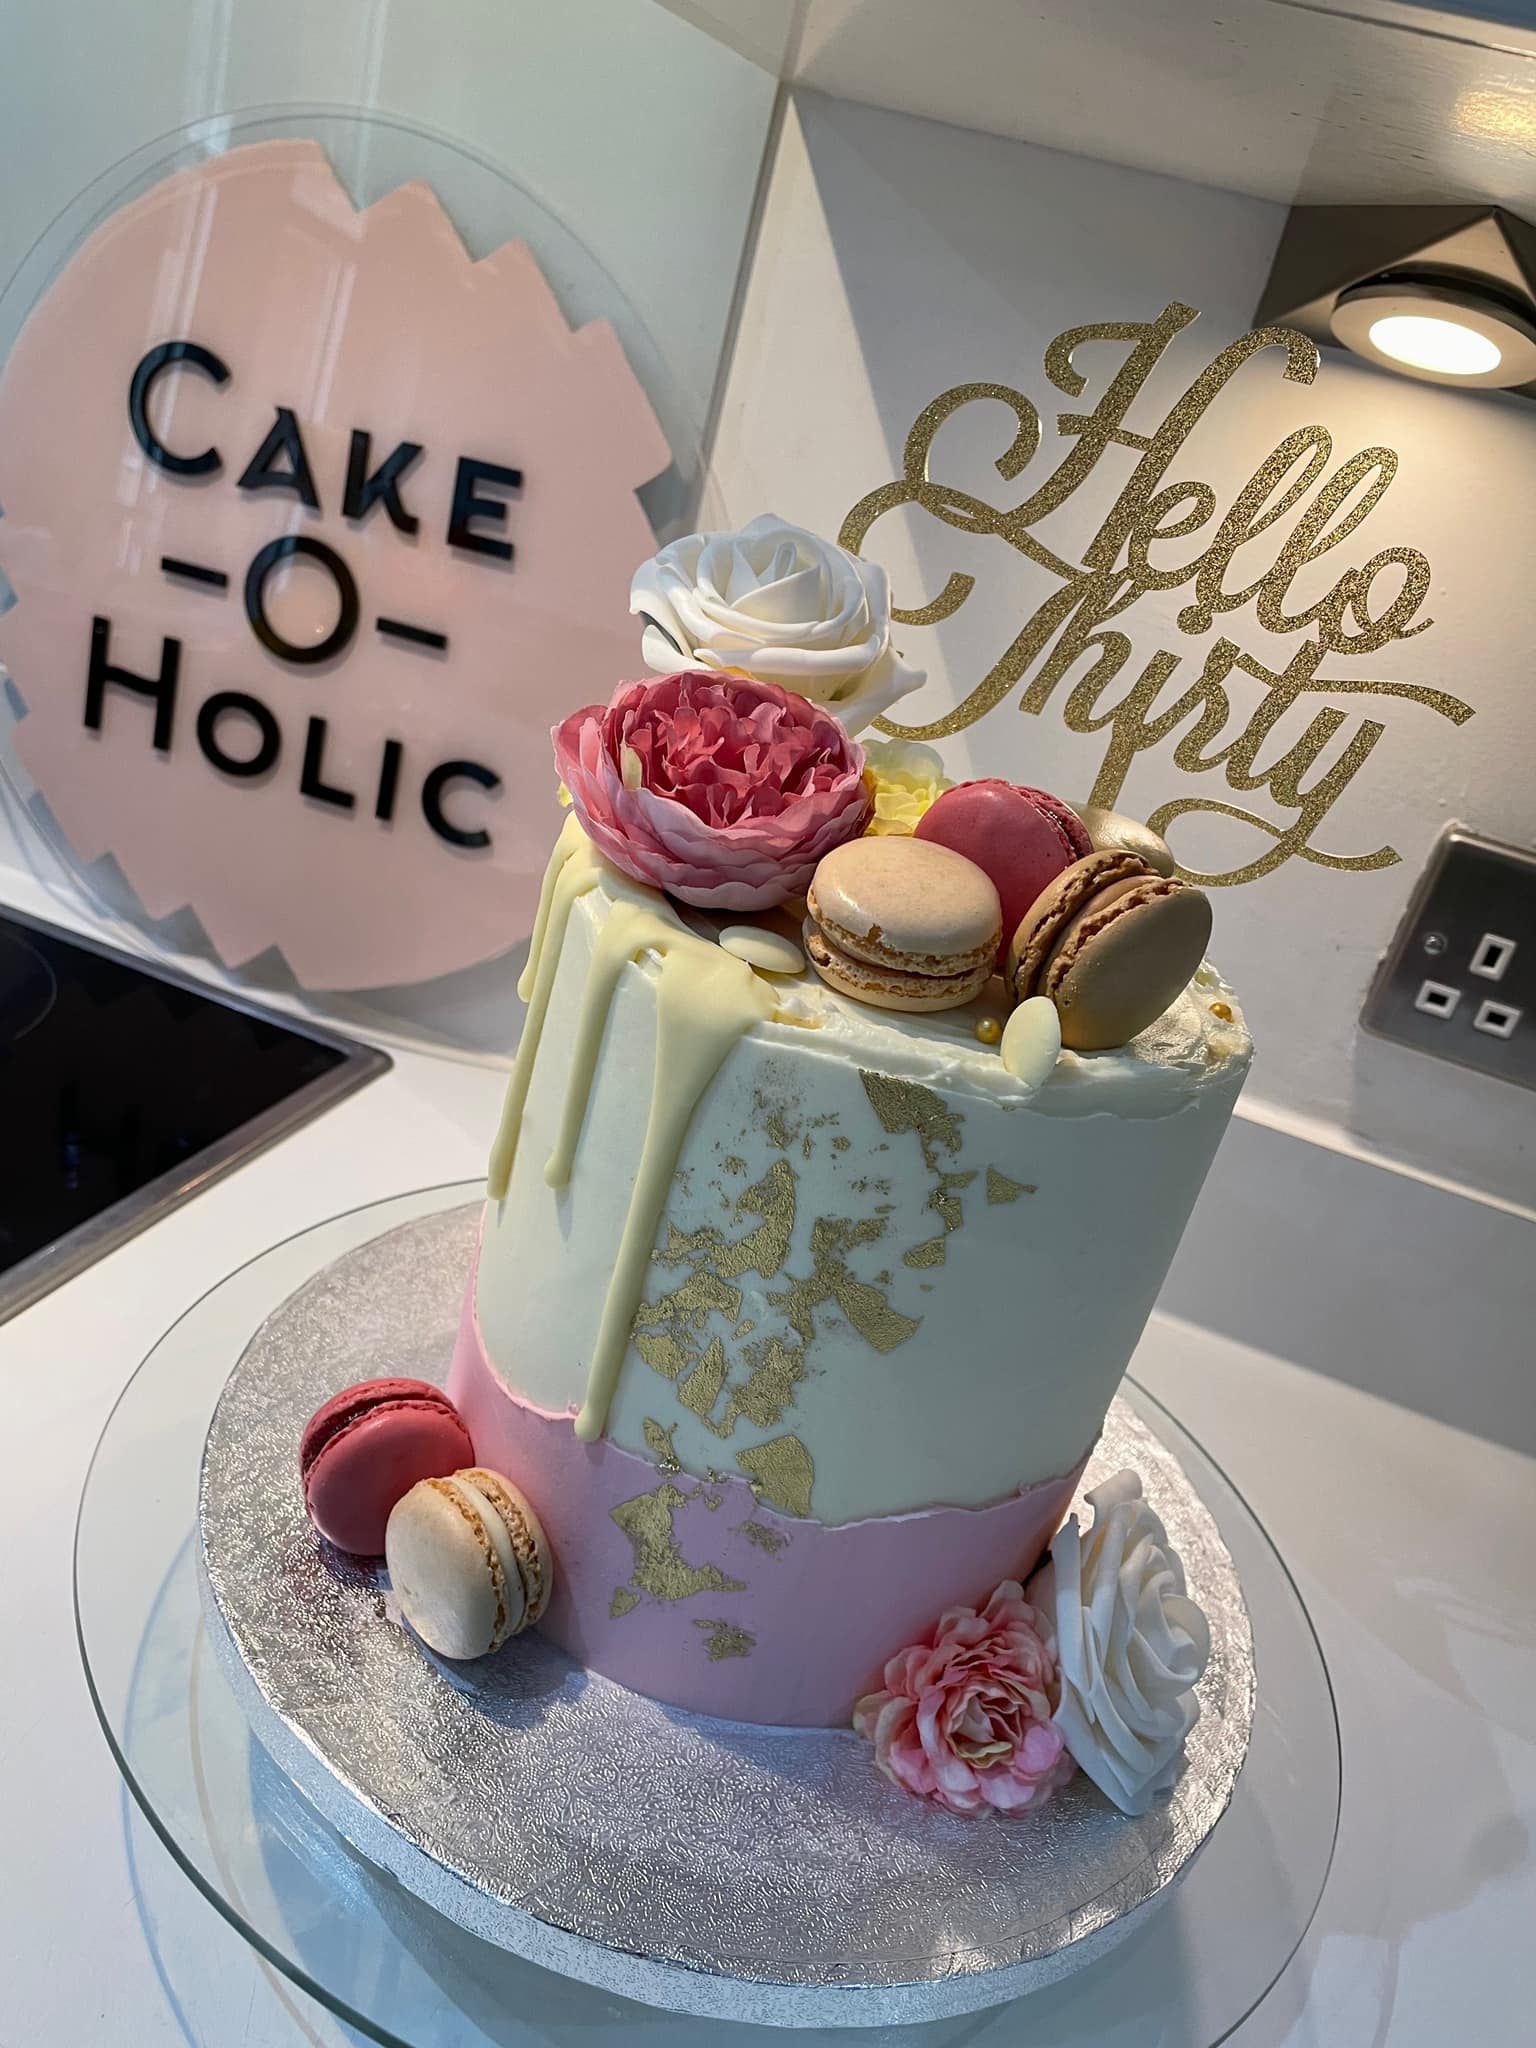 Cake O' Holic